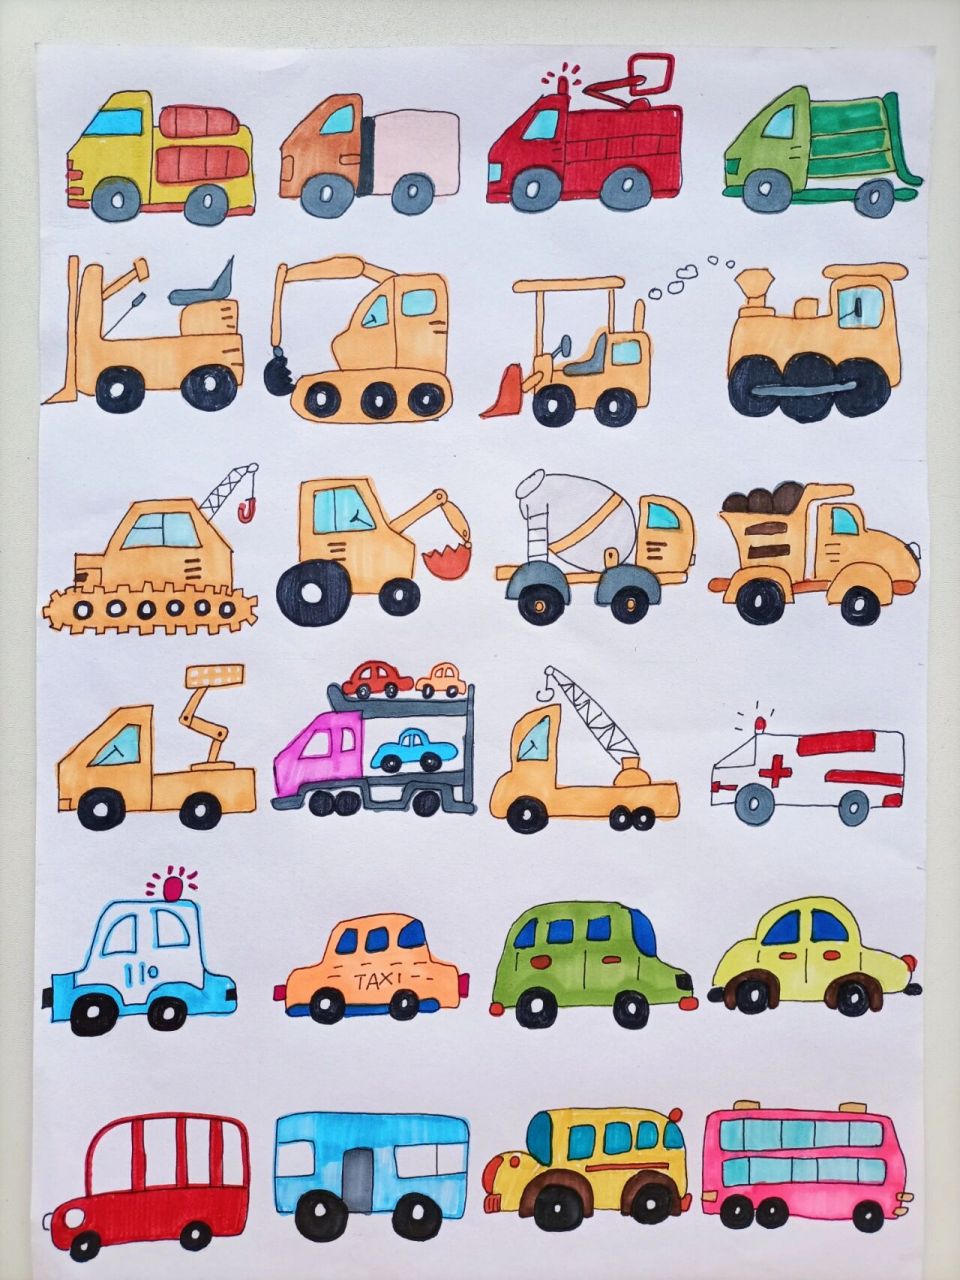 小汽车工程车简笔画(附线稿) 小男生应该都喜欢的工程车和小汽车,快